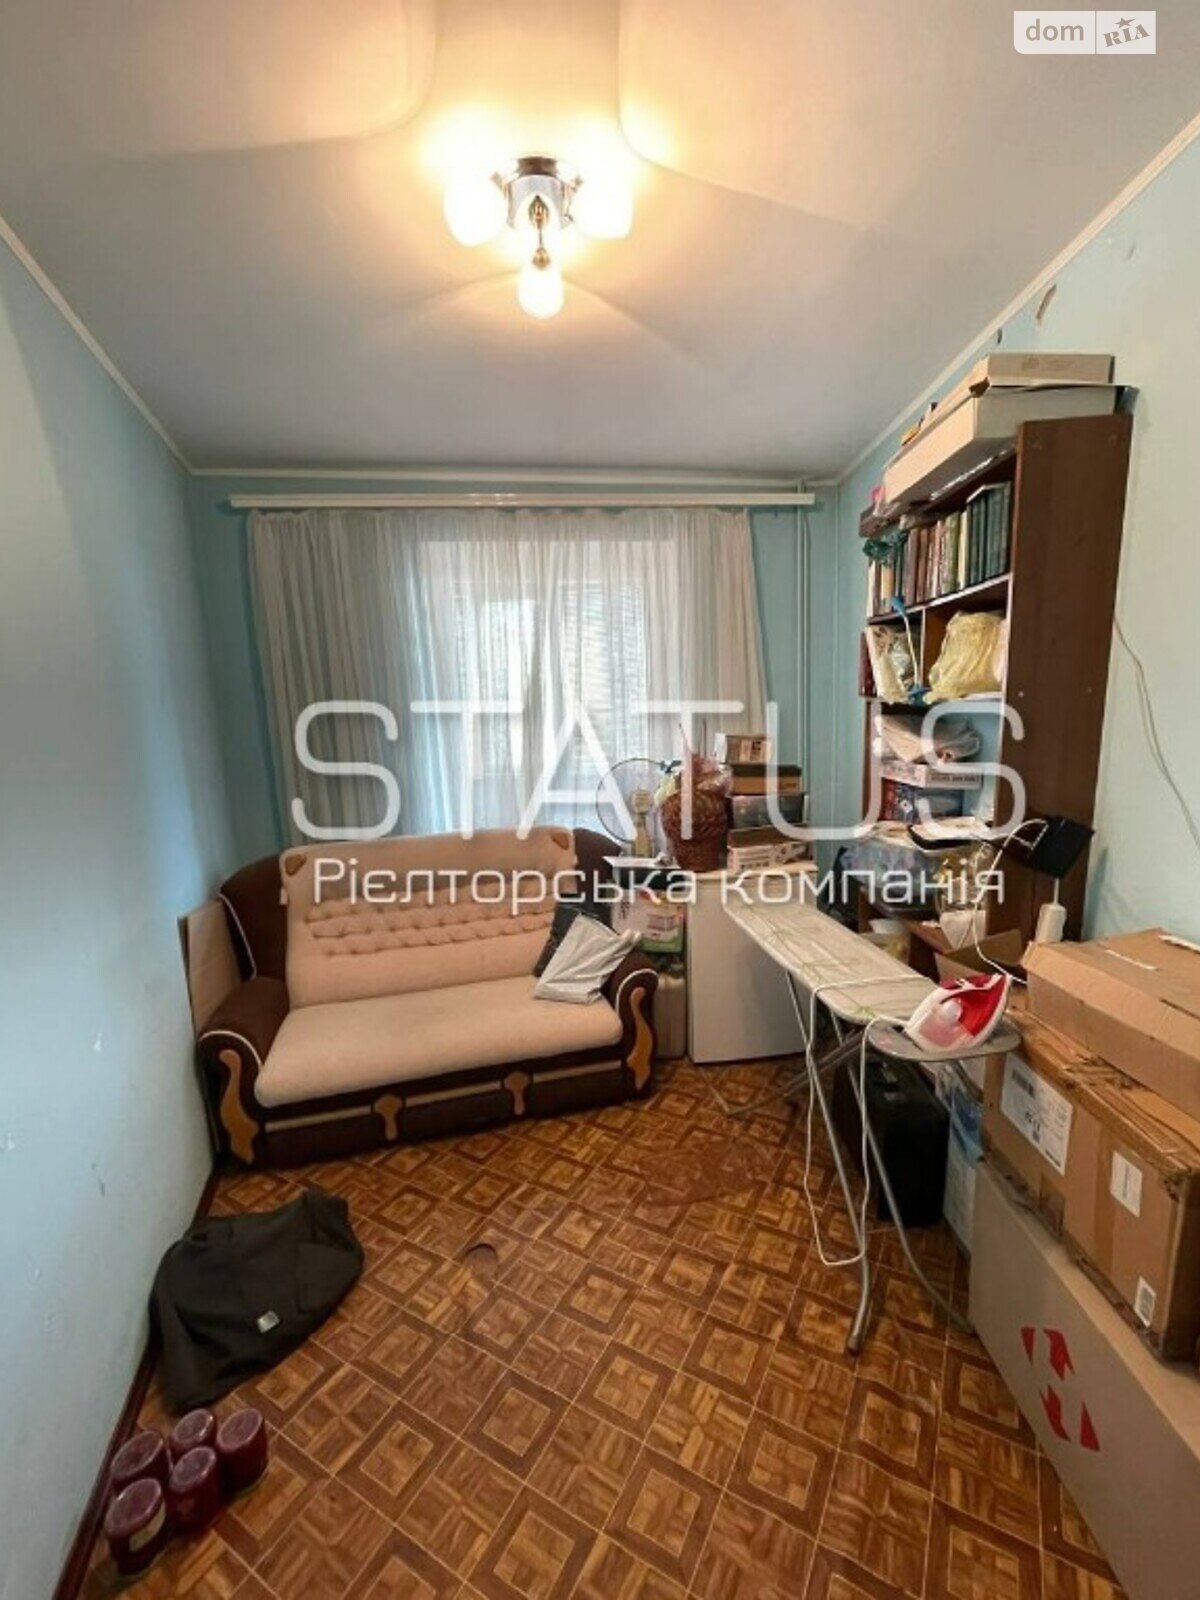 Продажа четырехкомнатной квартиры в Полтаве, на бул. Щепотьева 5, район Сады 3 (Огнивка) фото 1